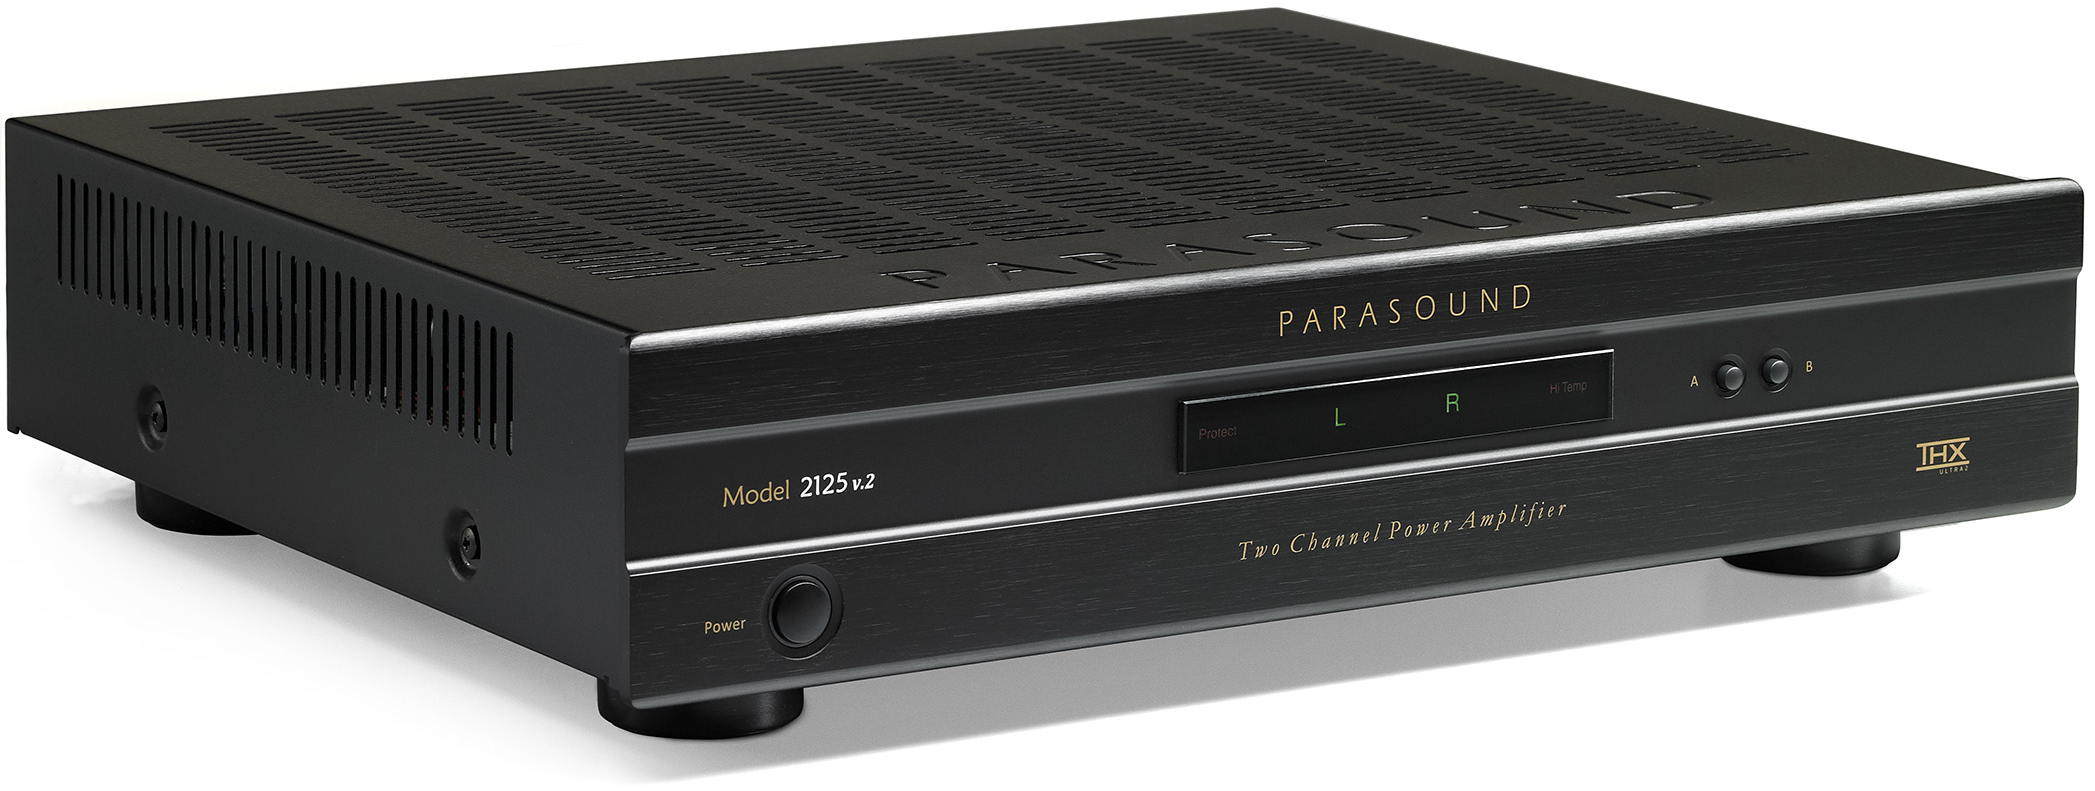 Усилители мощности Parasound Model 2125 v.2 black усилители мощности parasound 2250 v2